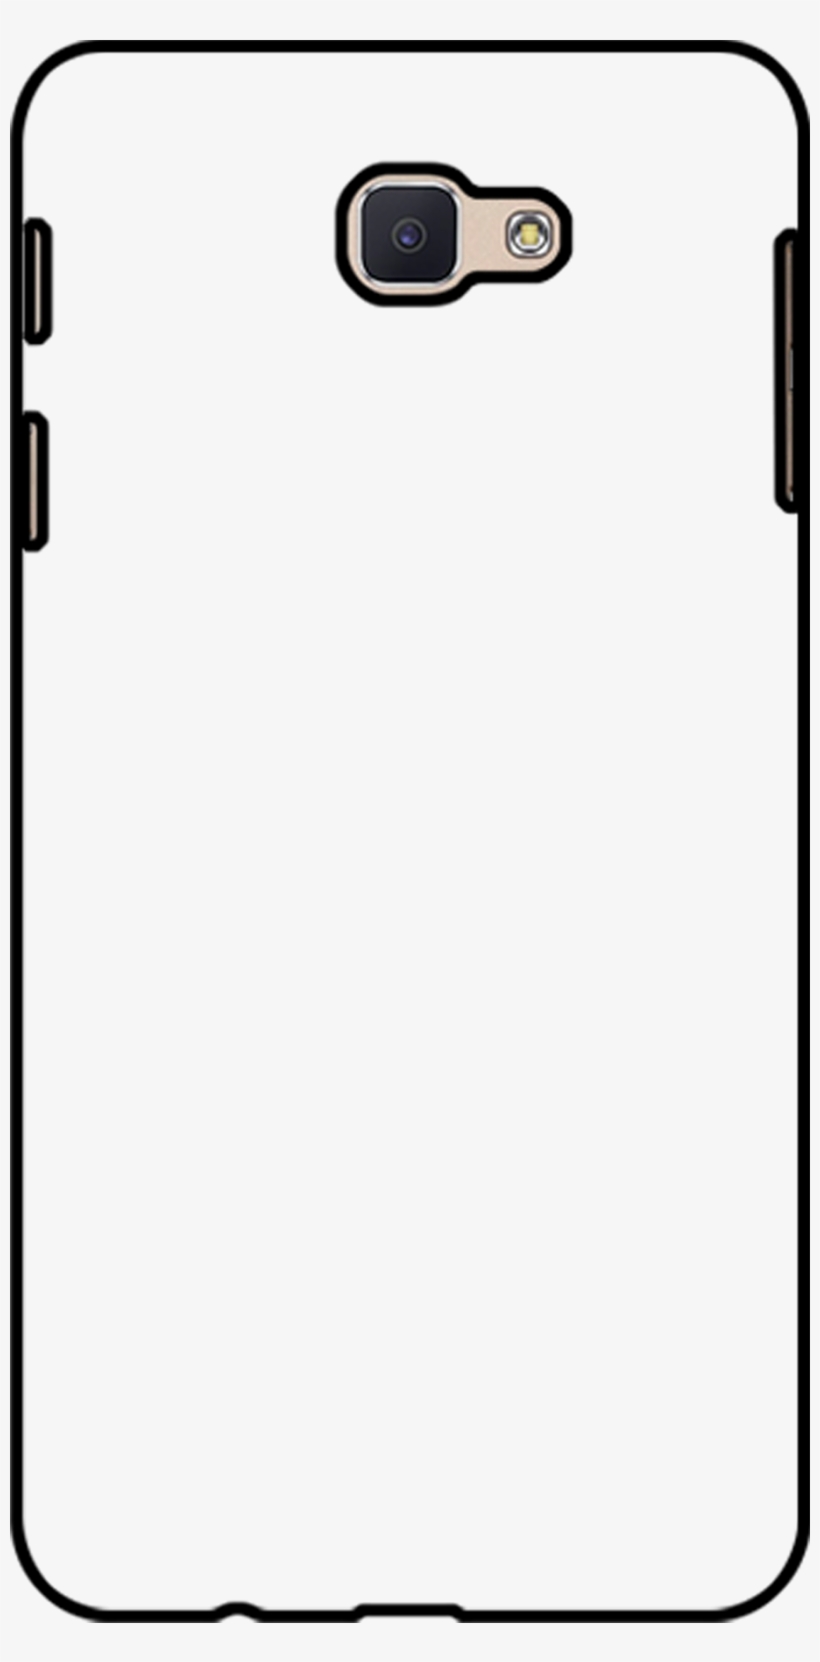 Samsung J7 Prime - Mobile Phone Case, transparent png #8709242